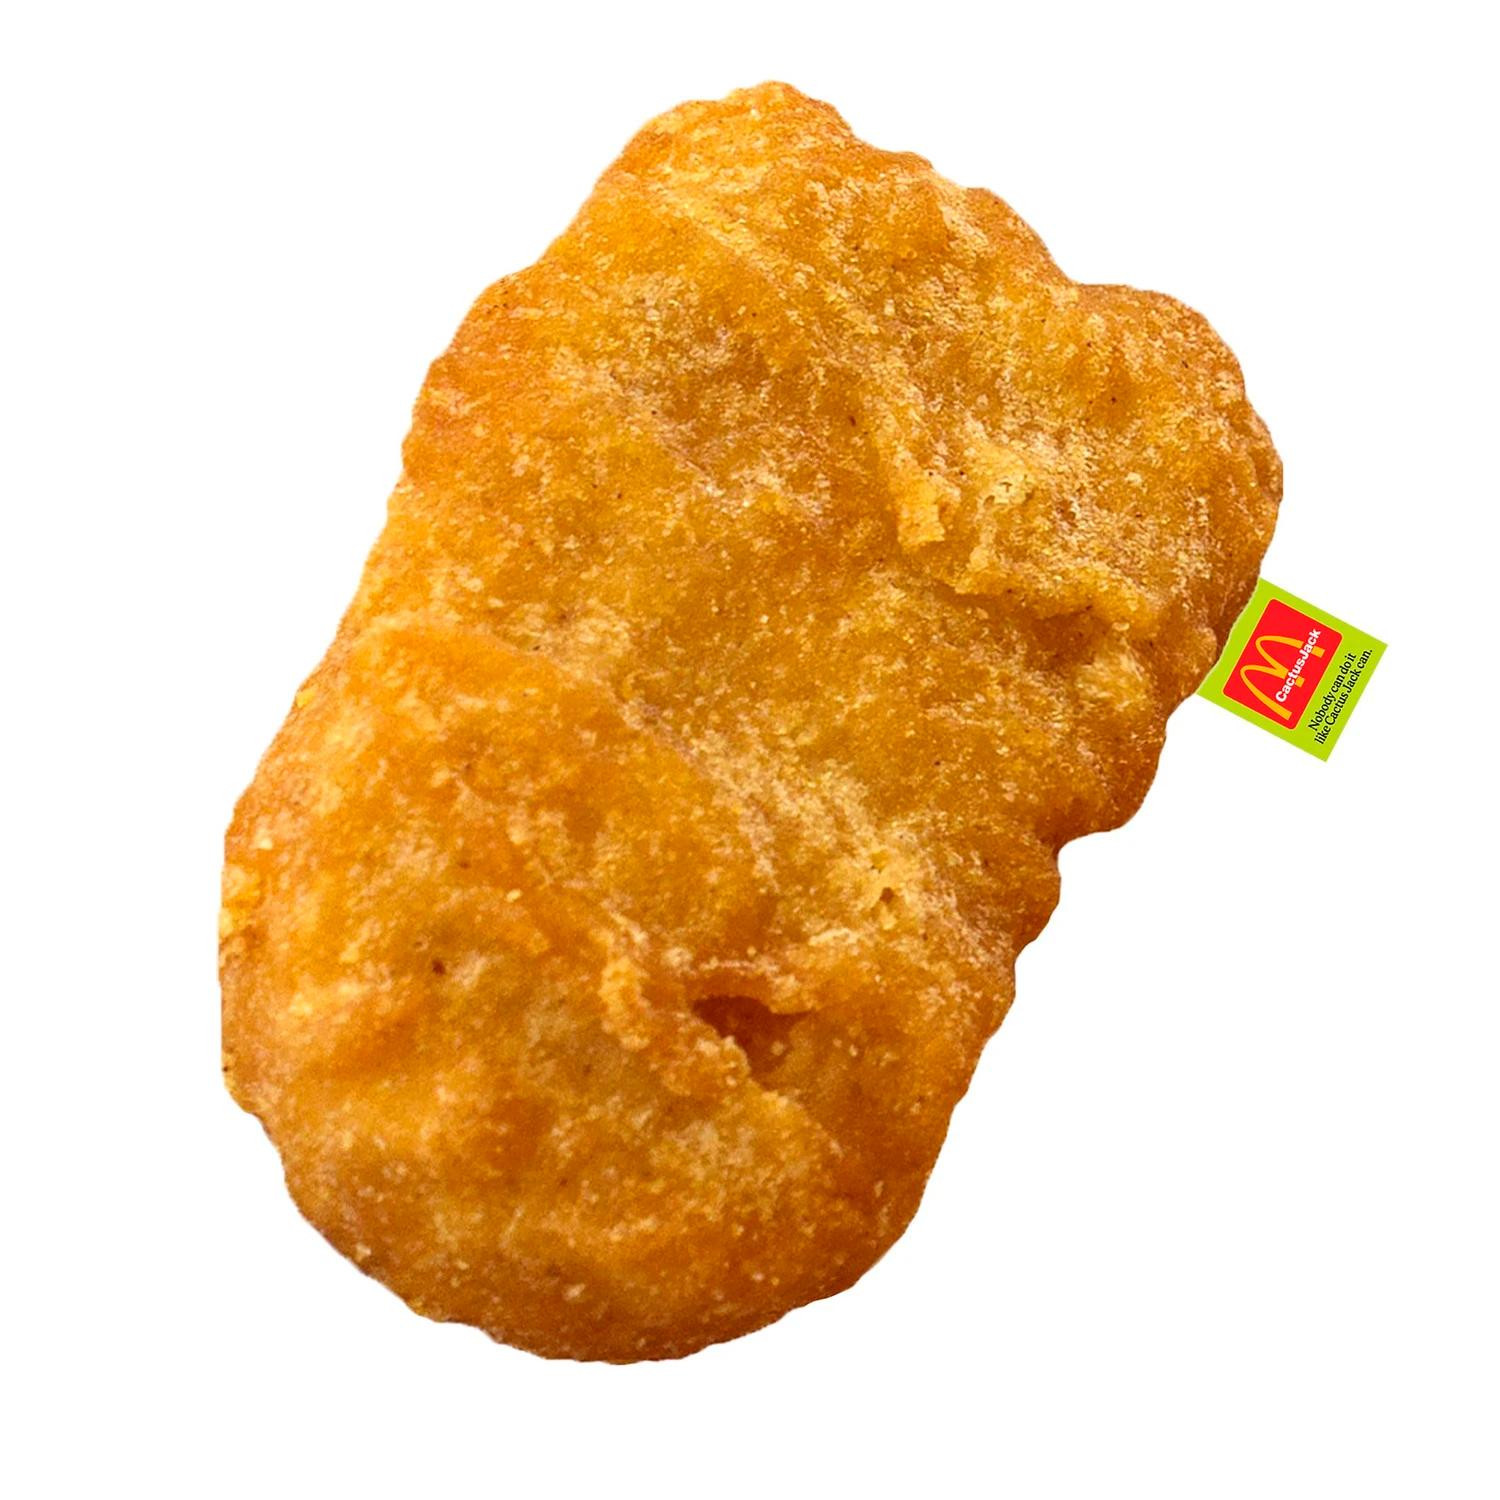 El cojín 'nugget' de McDonald's